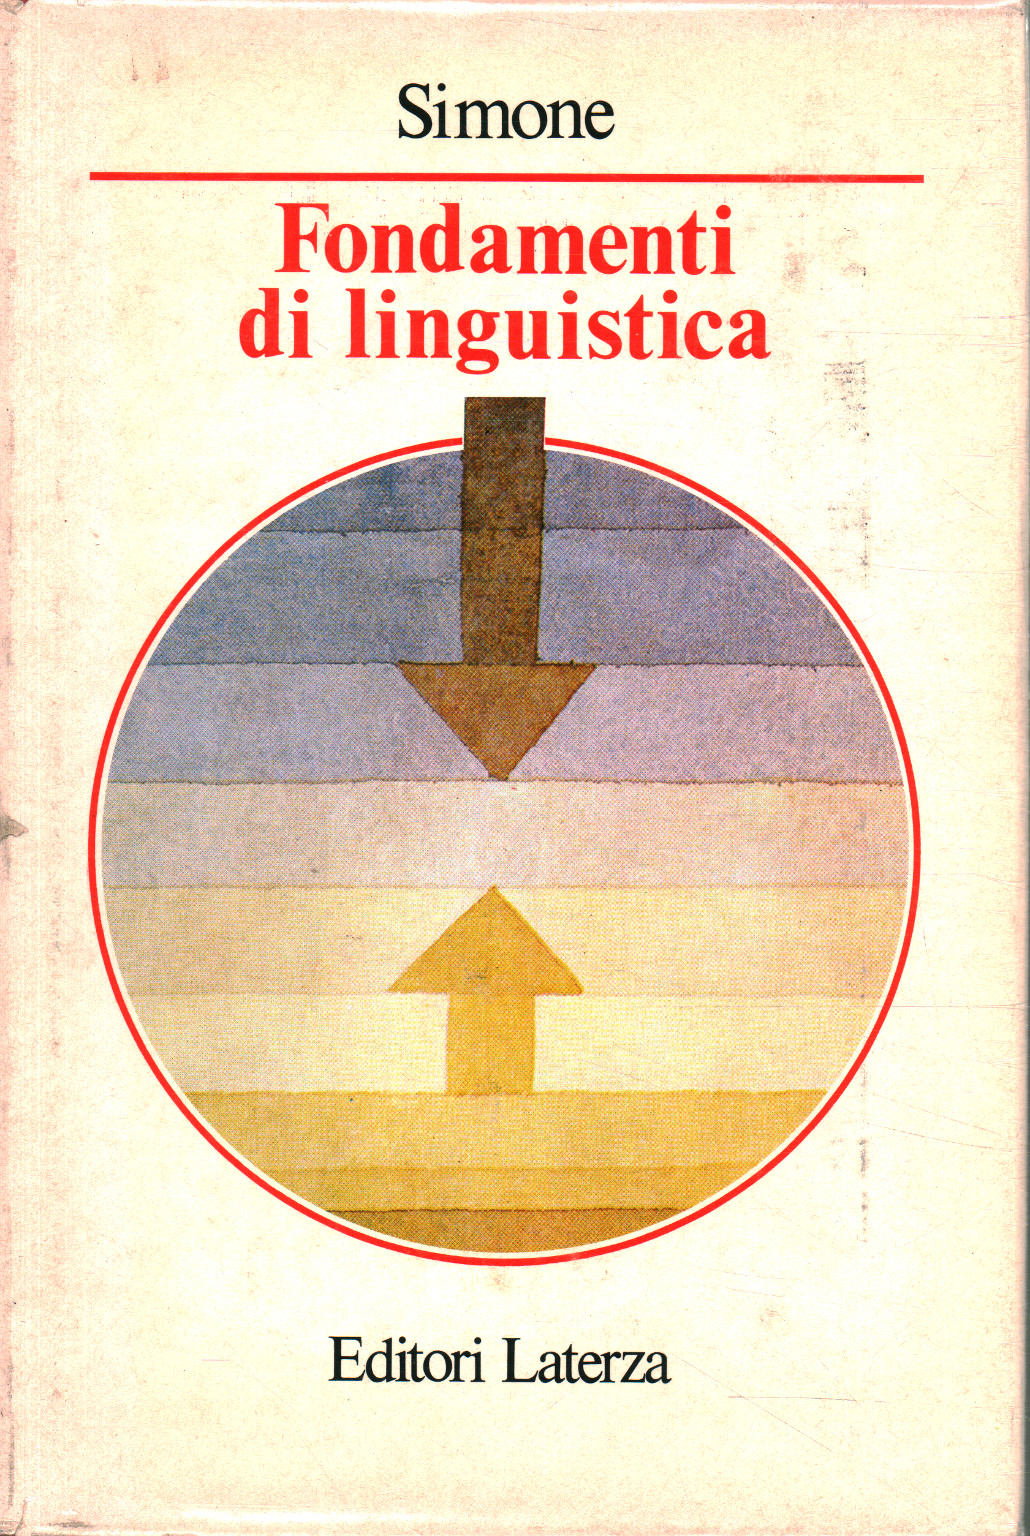 Fundamentals of linguistics